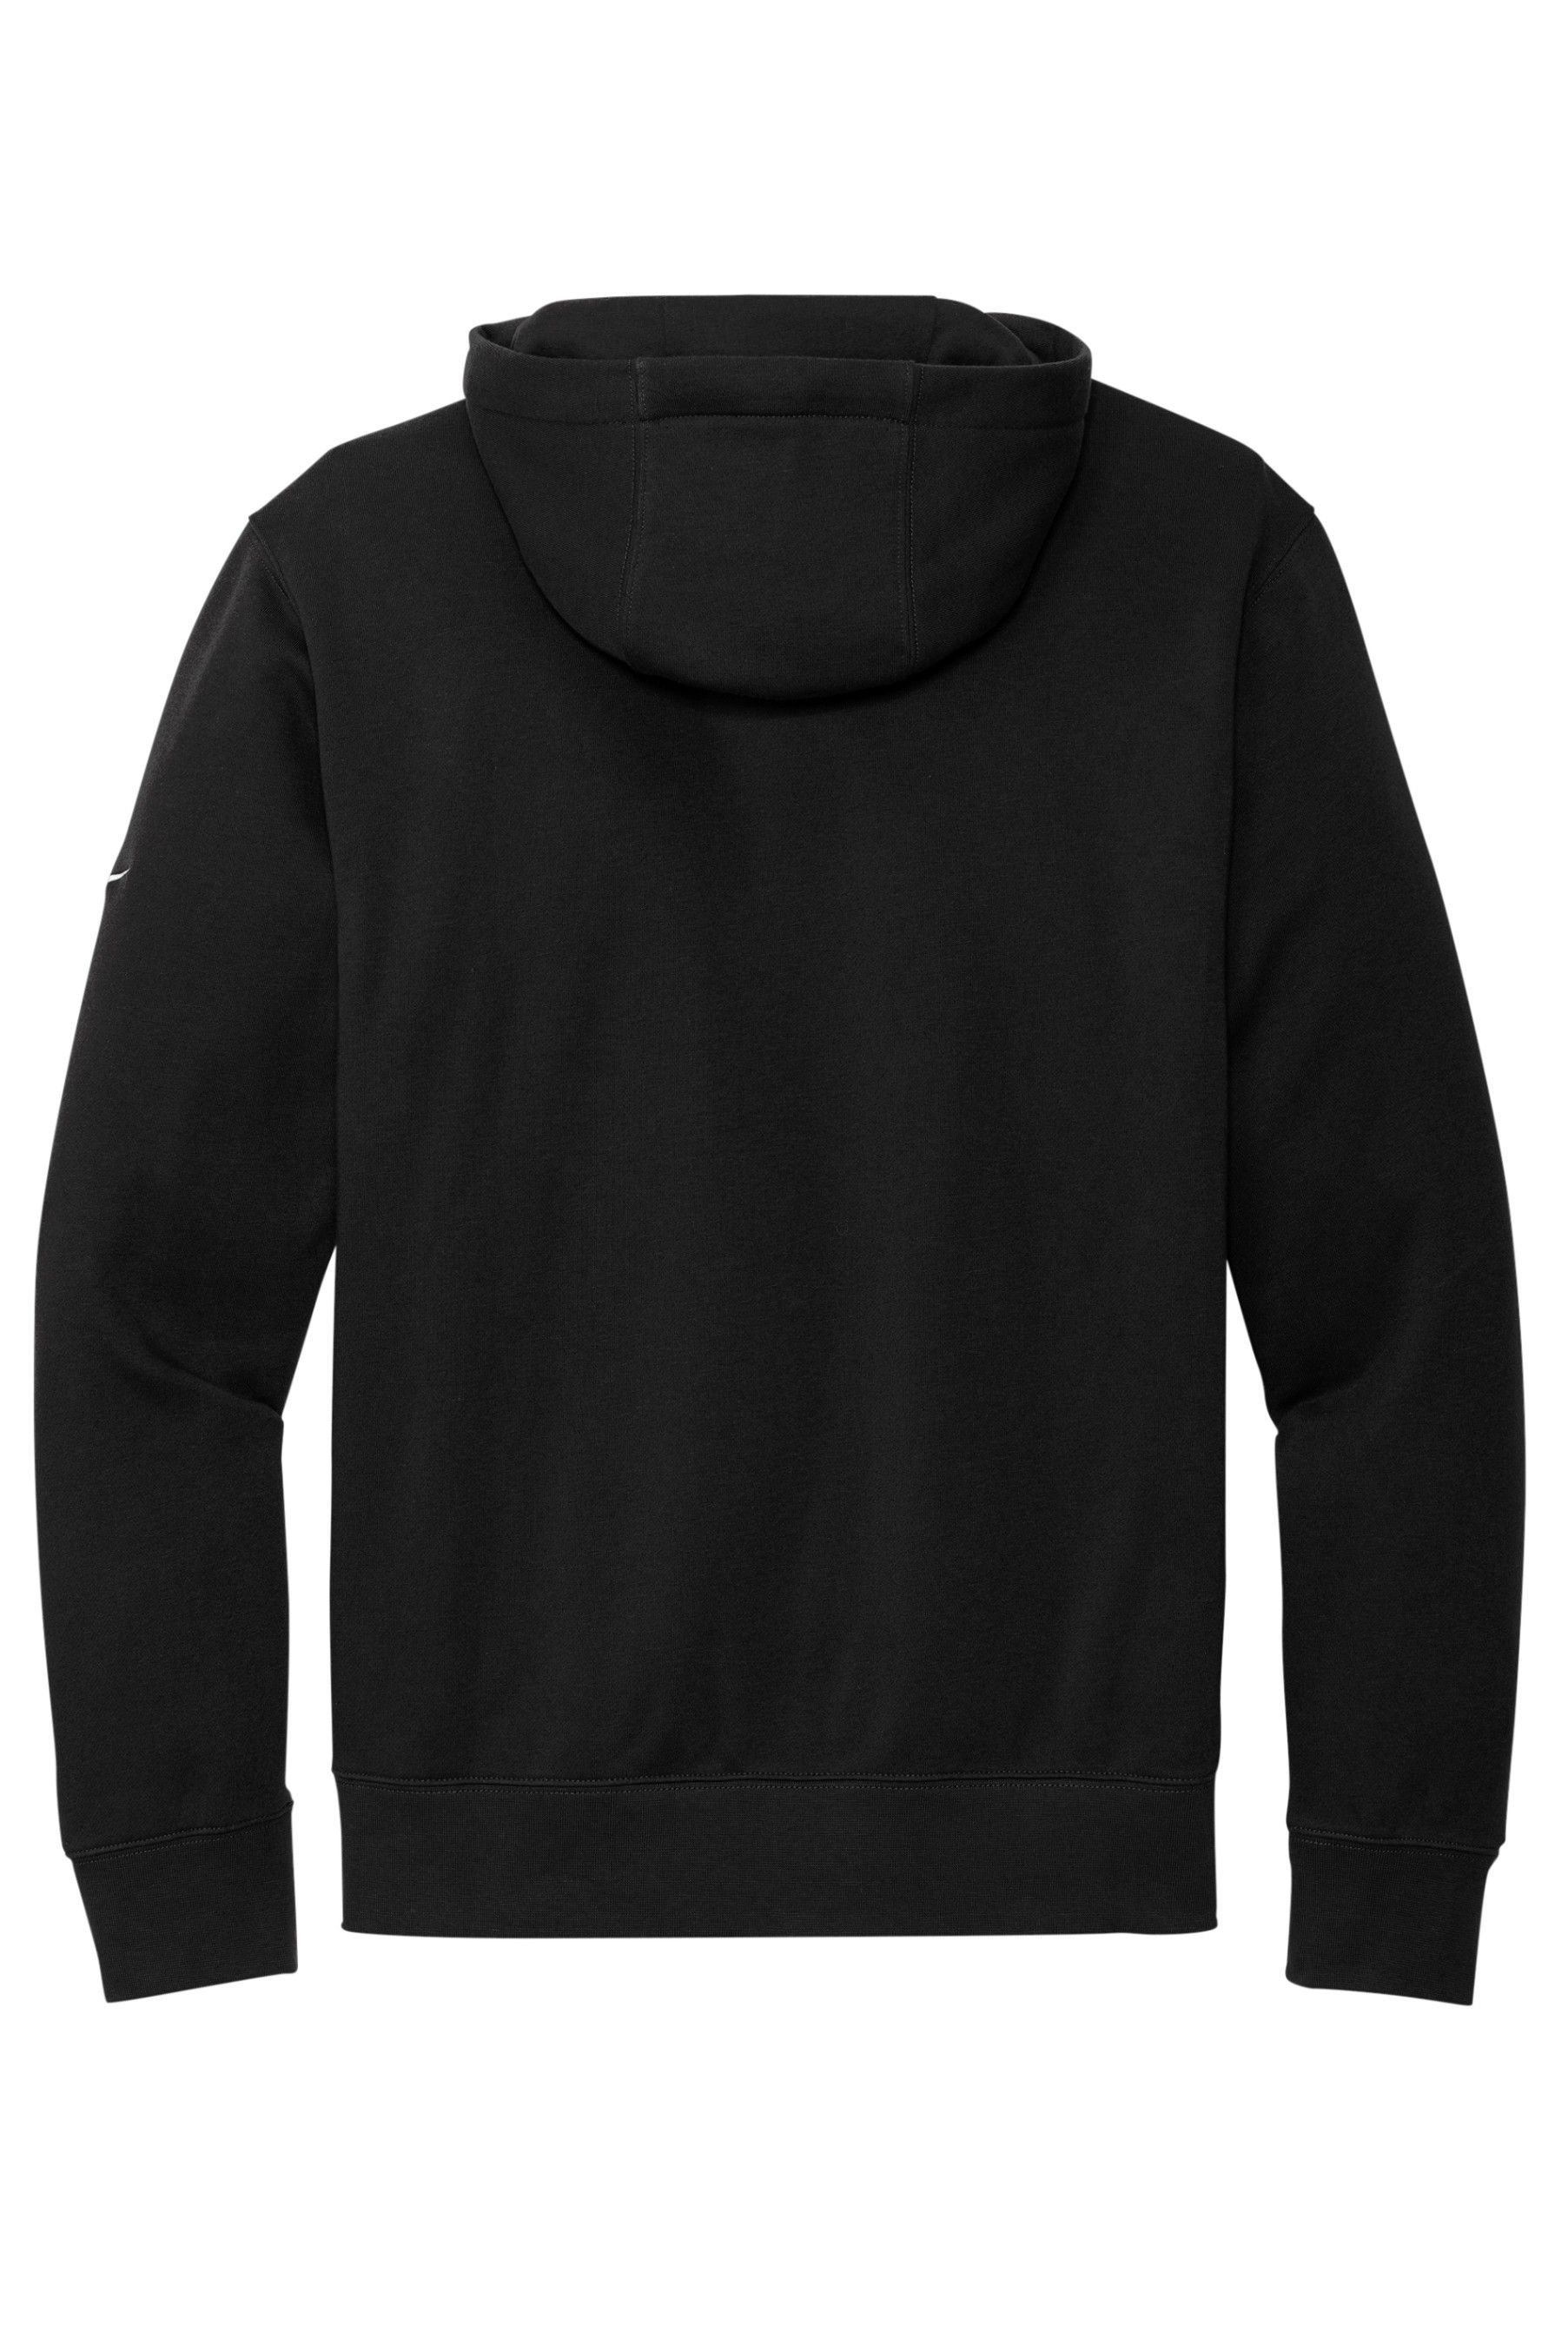 Club Fleece Sleeve Swoosh Pullover Men's Hoodie - Nike DR1499